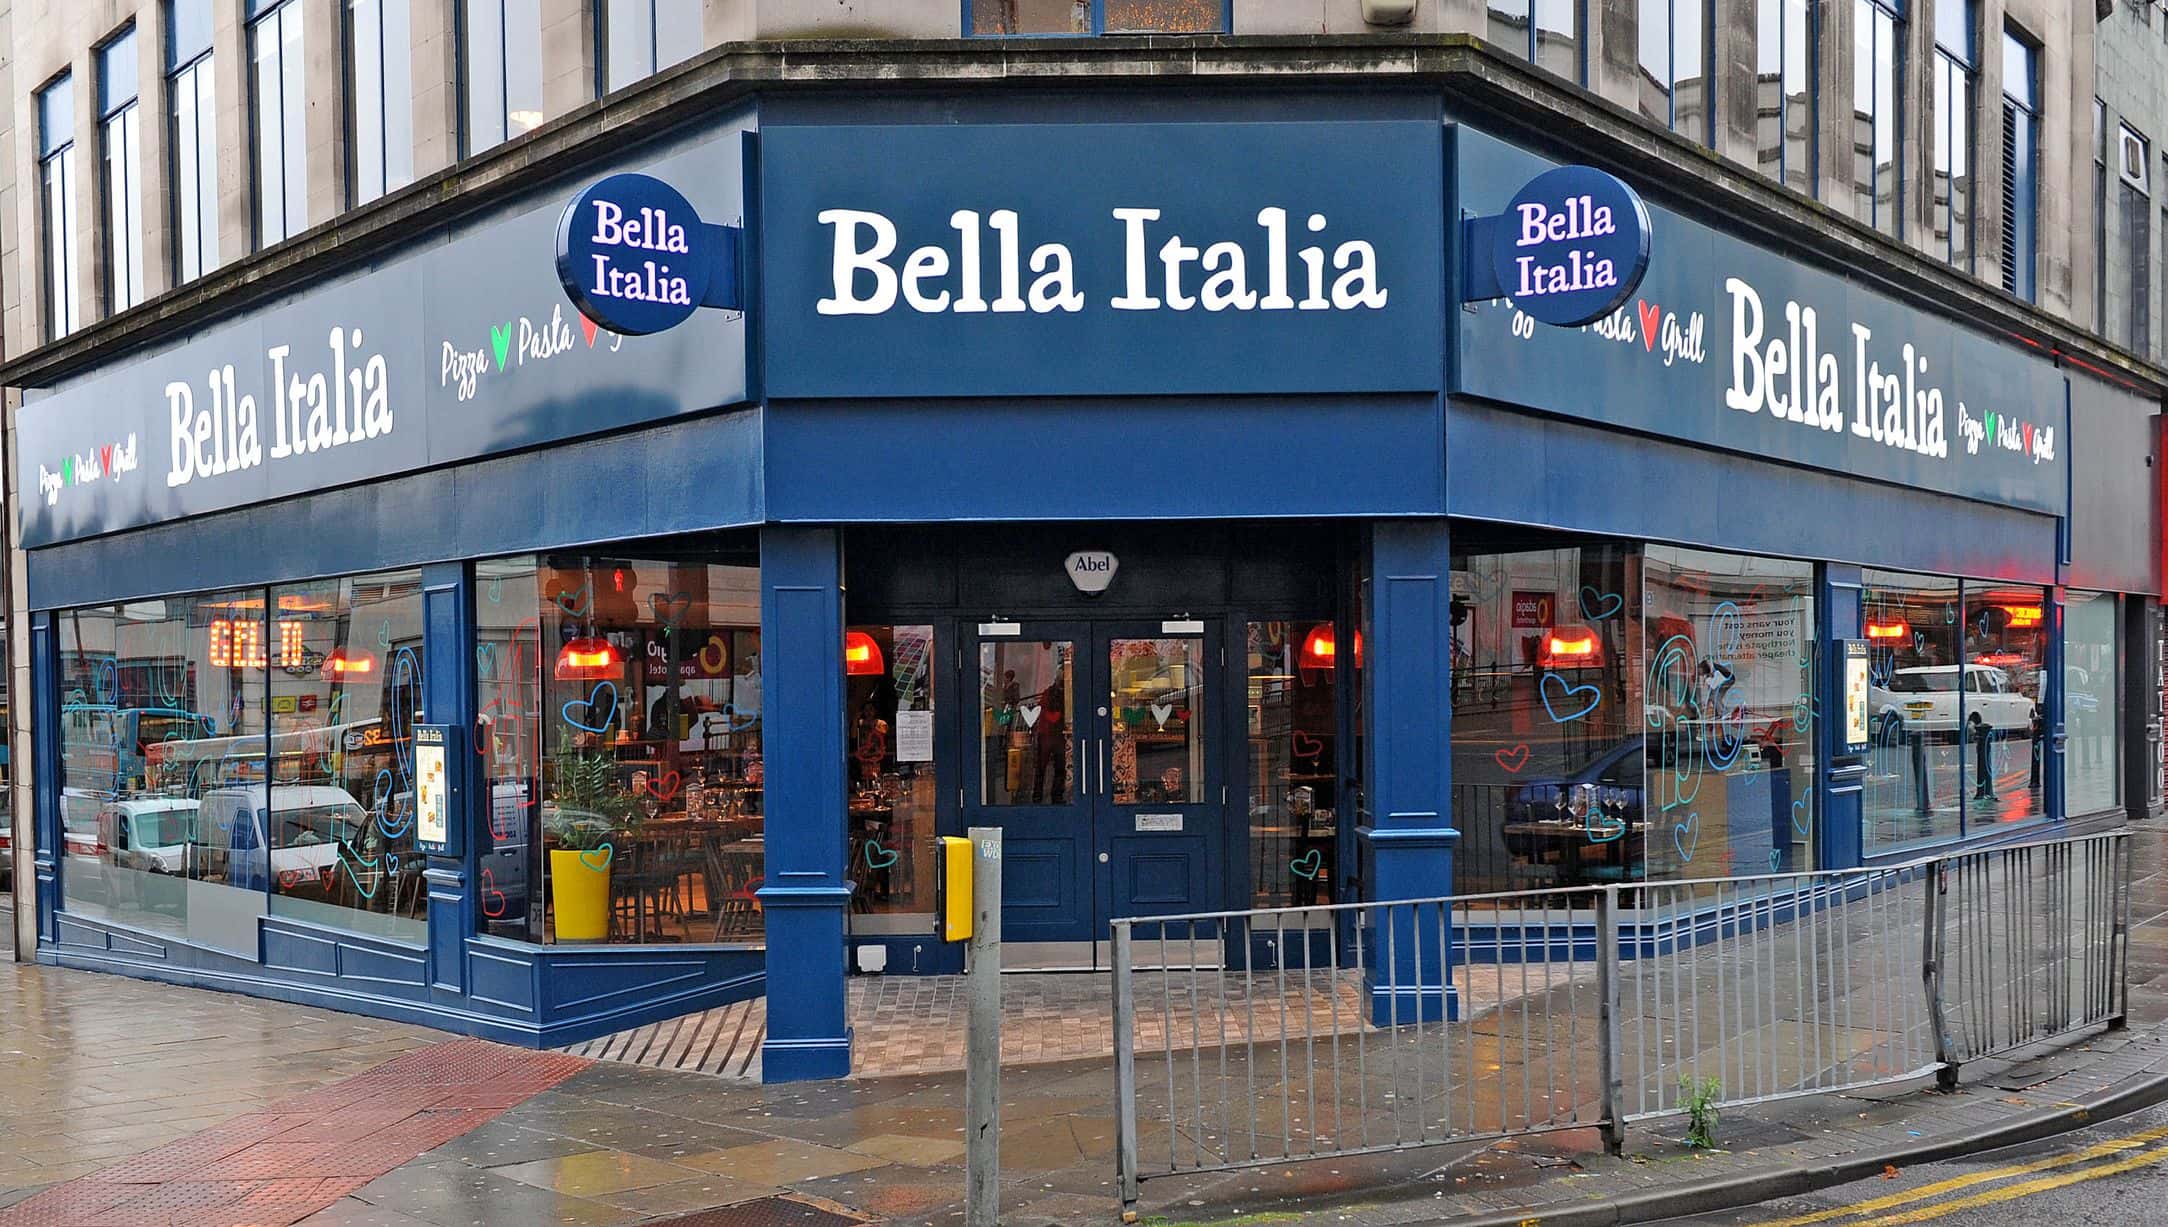 Bella Italia Liverpool for hire